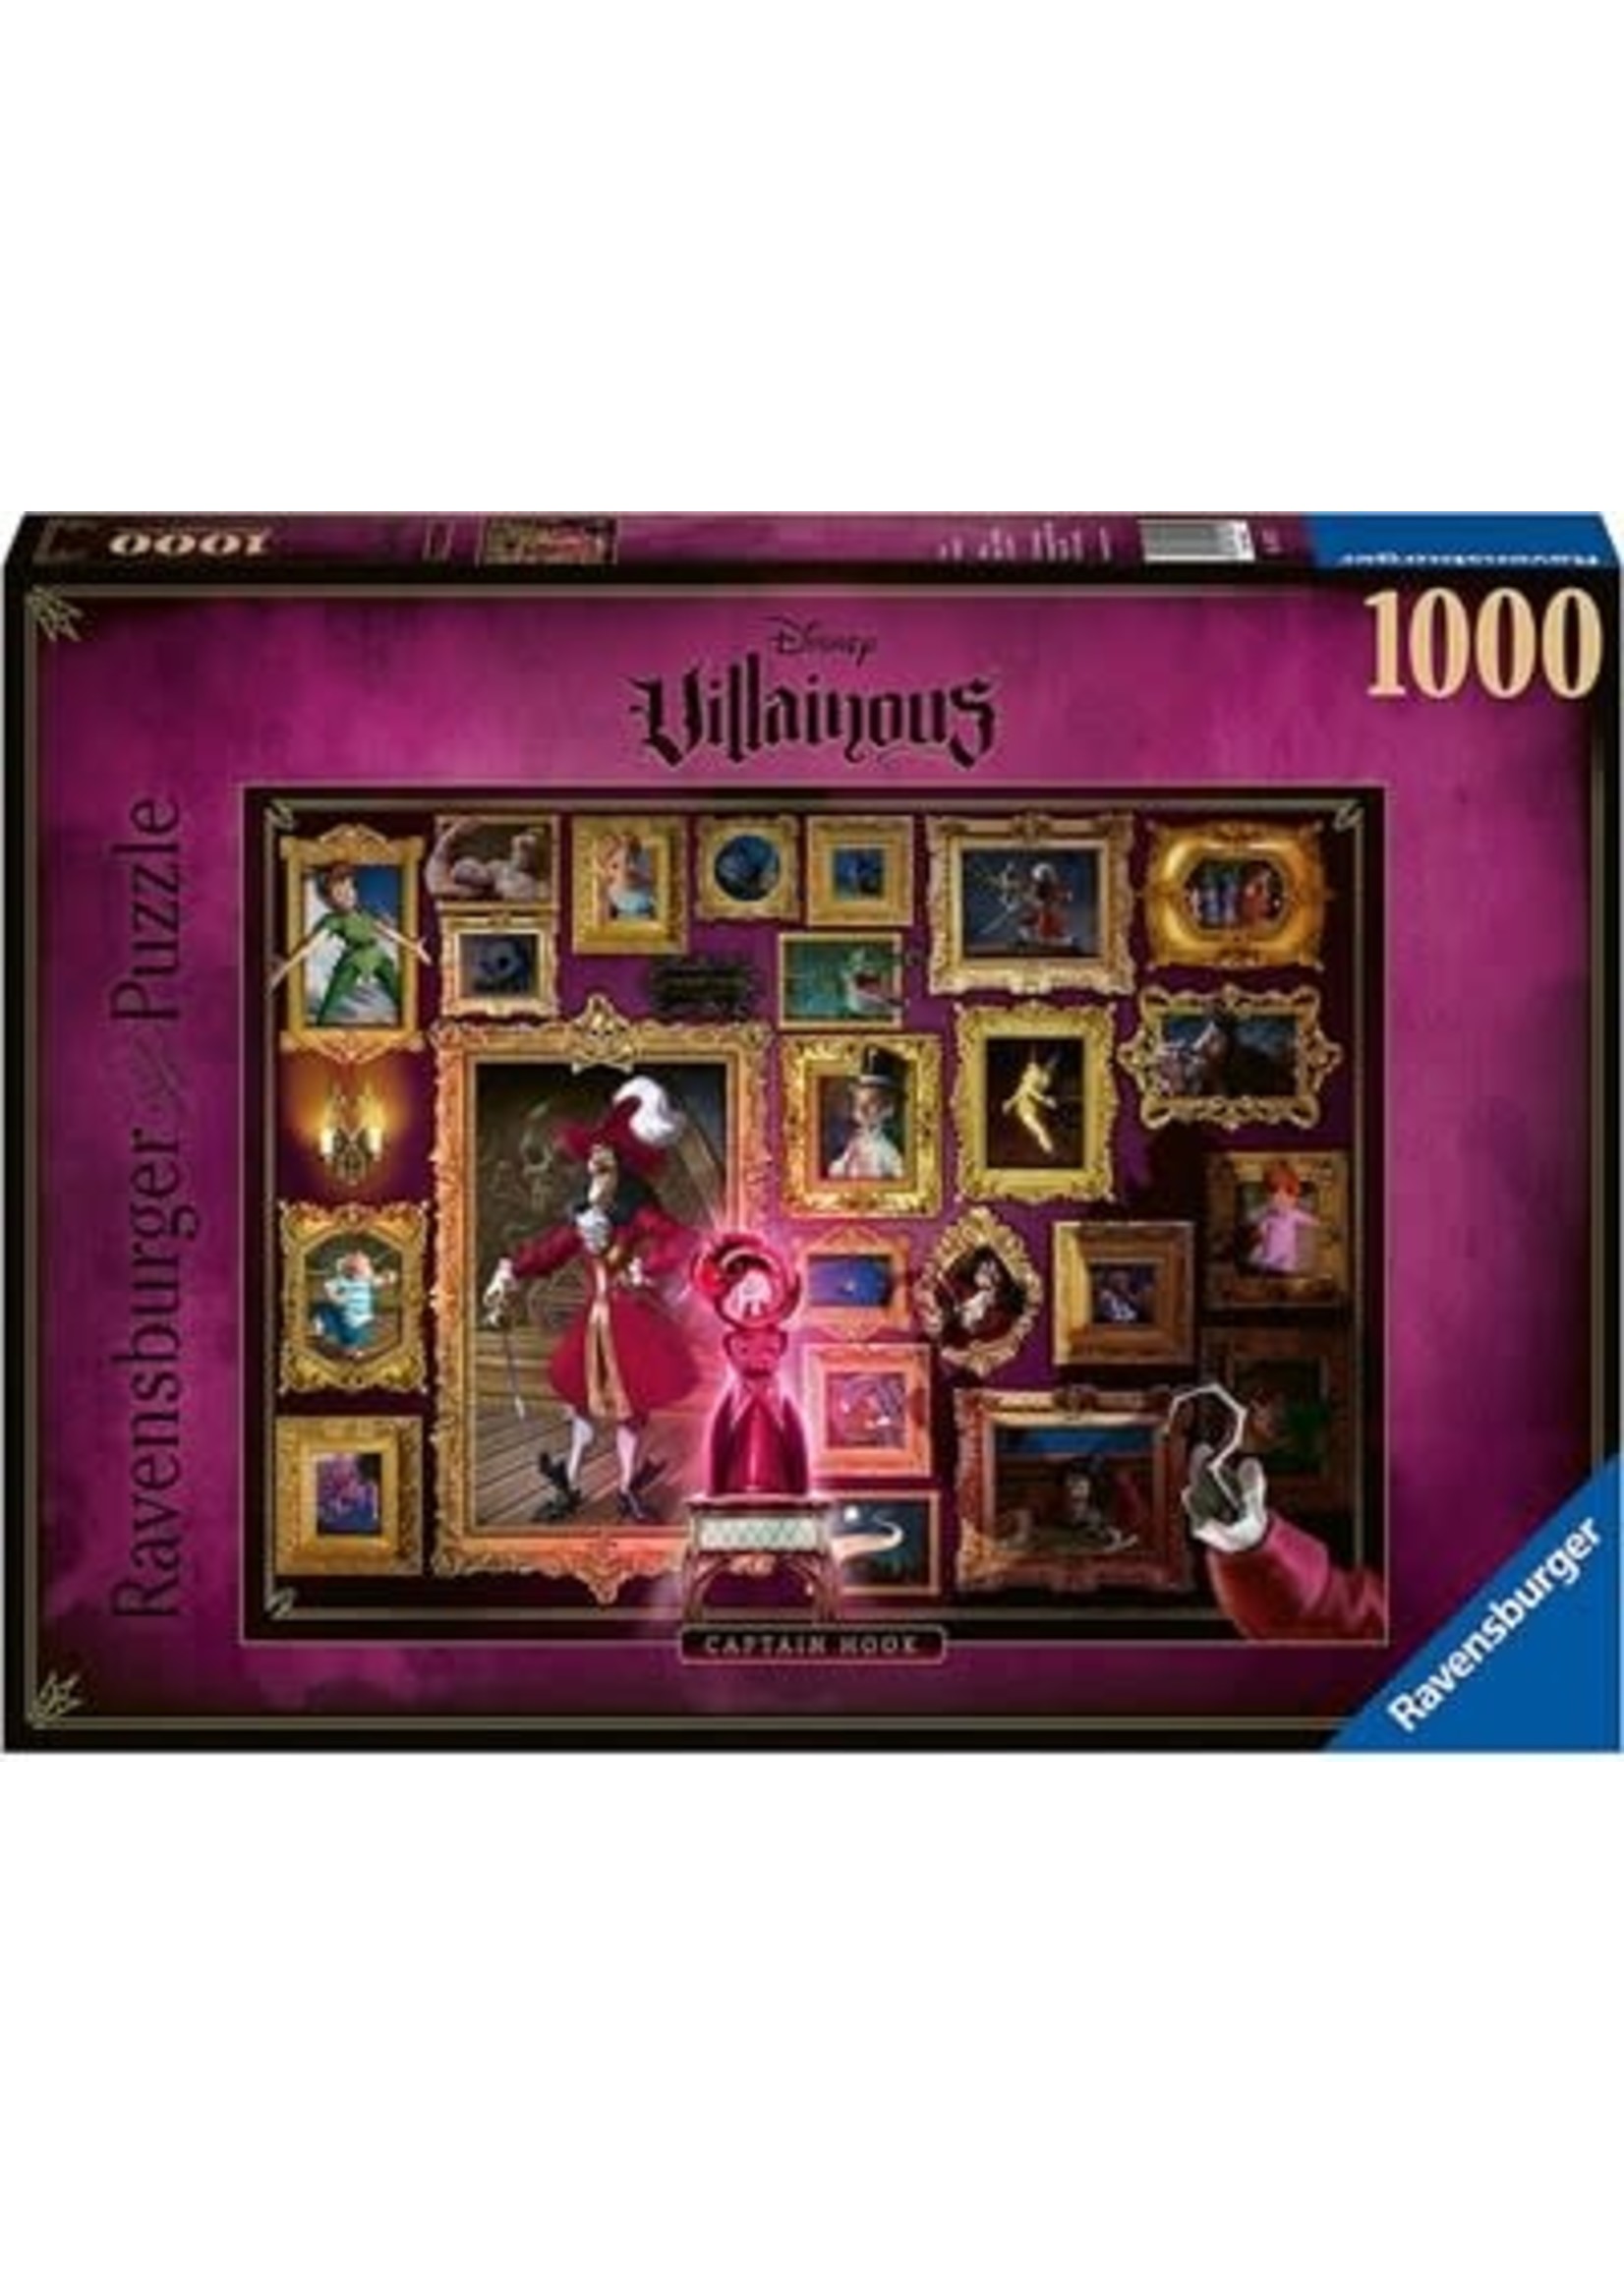 Ravensburger Puzzle Ravensburger 1000 pcs Villainous - Captain Hook